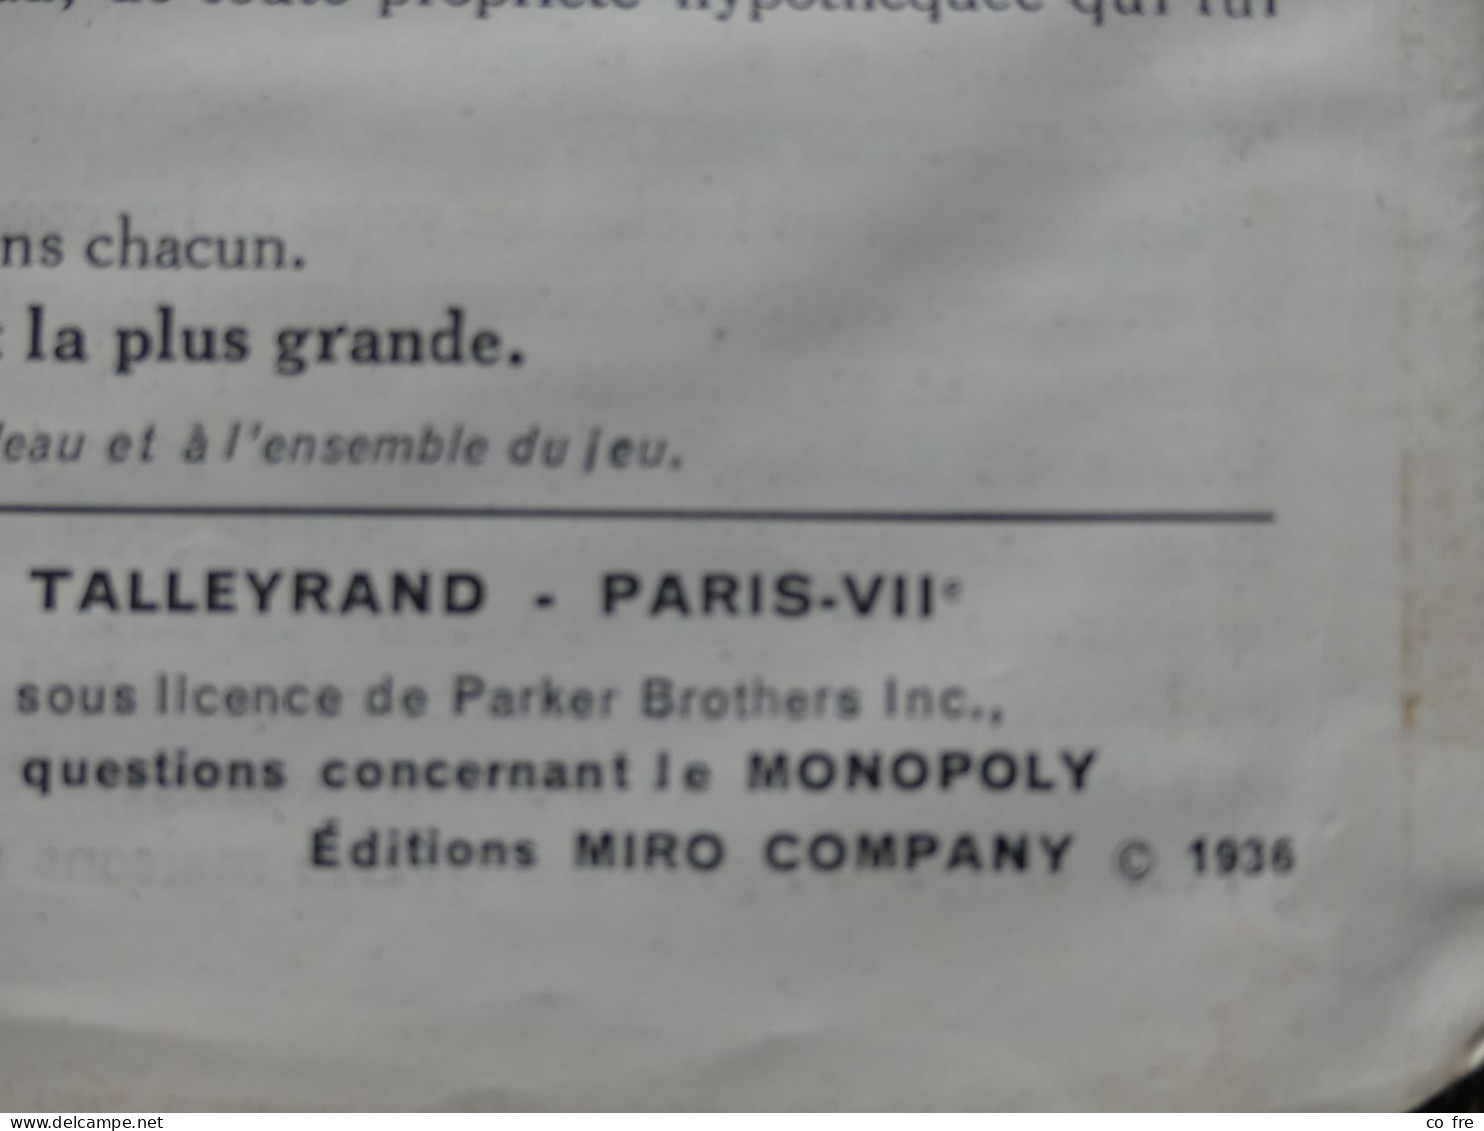 Jeu de MONOPOLY ancien, règle copyright de 1936, une des 1ères éditions françaises.